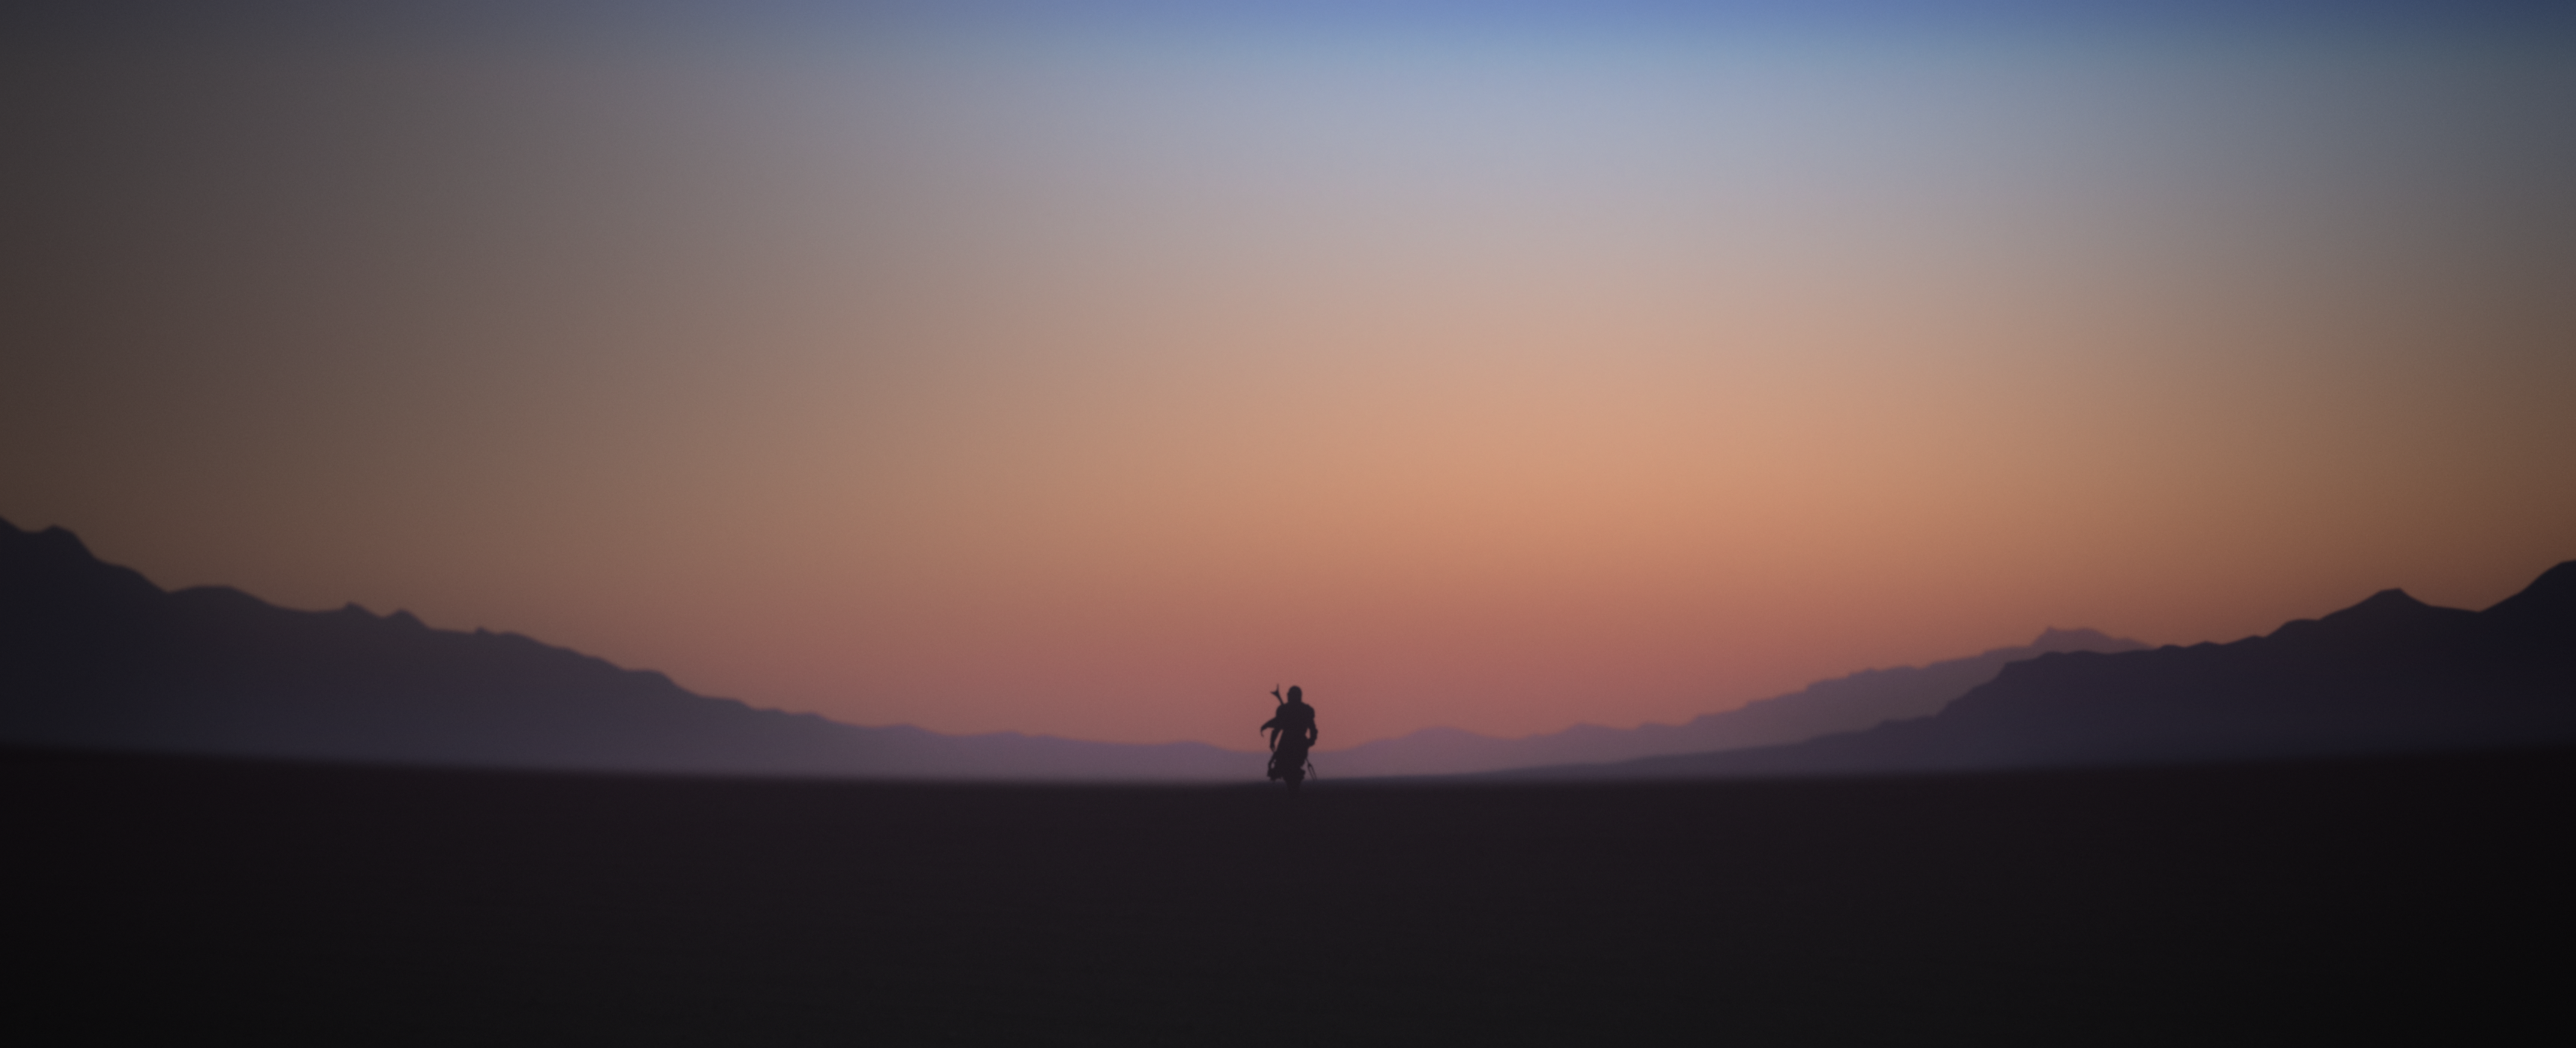 Louis Coyle Fantasy Art Digital Art Ultra Wide The Mandalorian Desert Gradient Landscape Mountains S 3440x1400